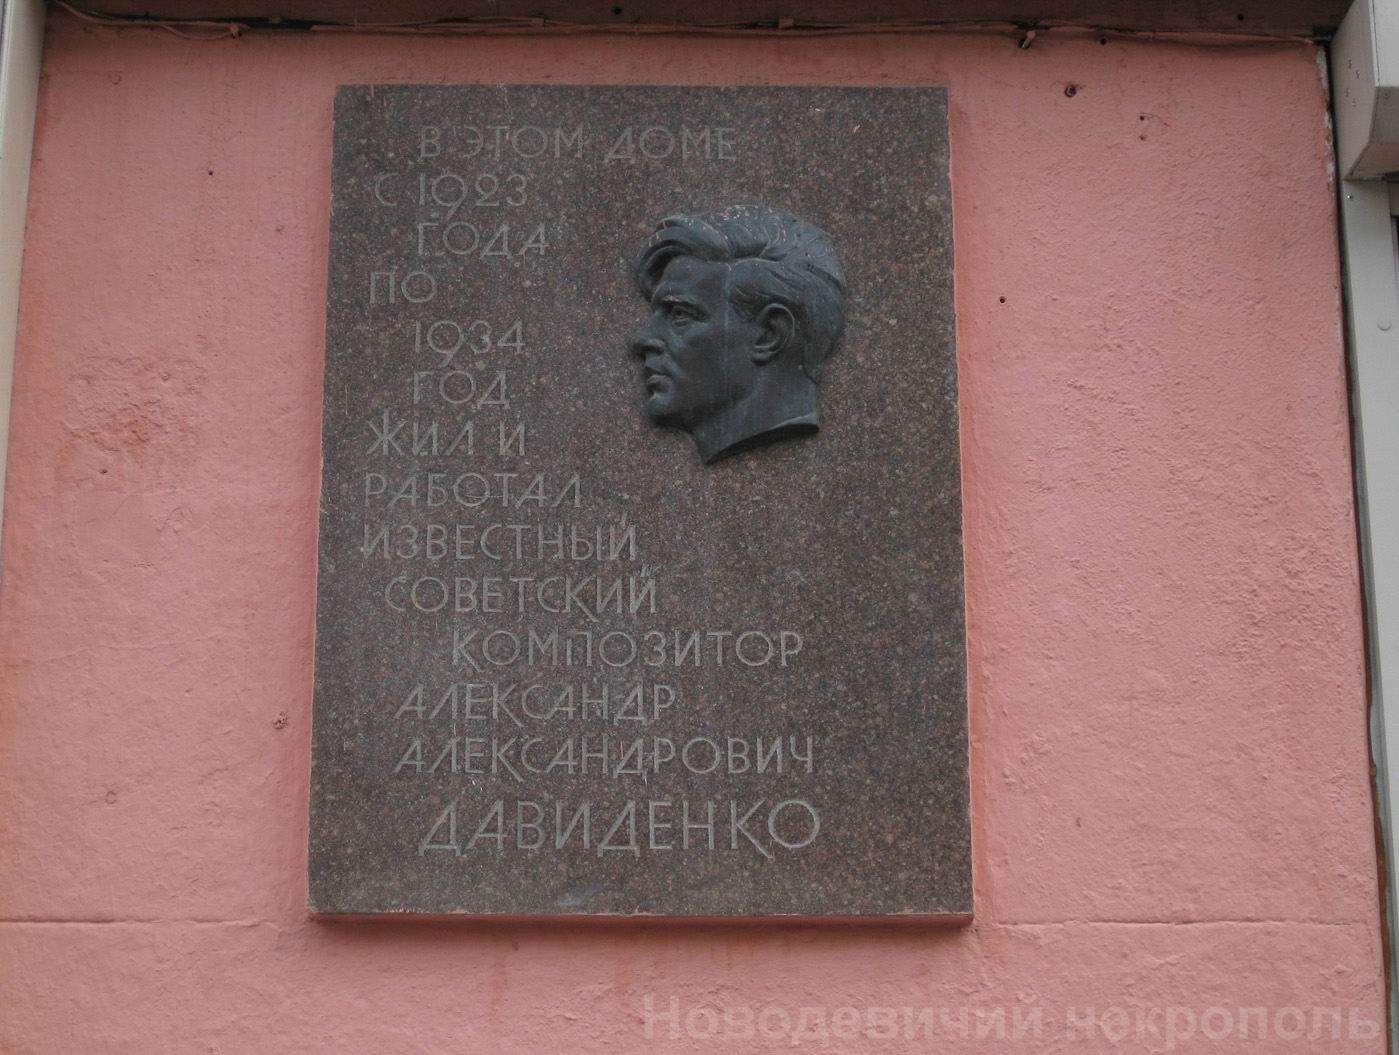 Мемориальная доска Давиденко А.А. (1899-1934), на улице Арбат, дом 51, открыта в 1973.